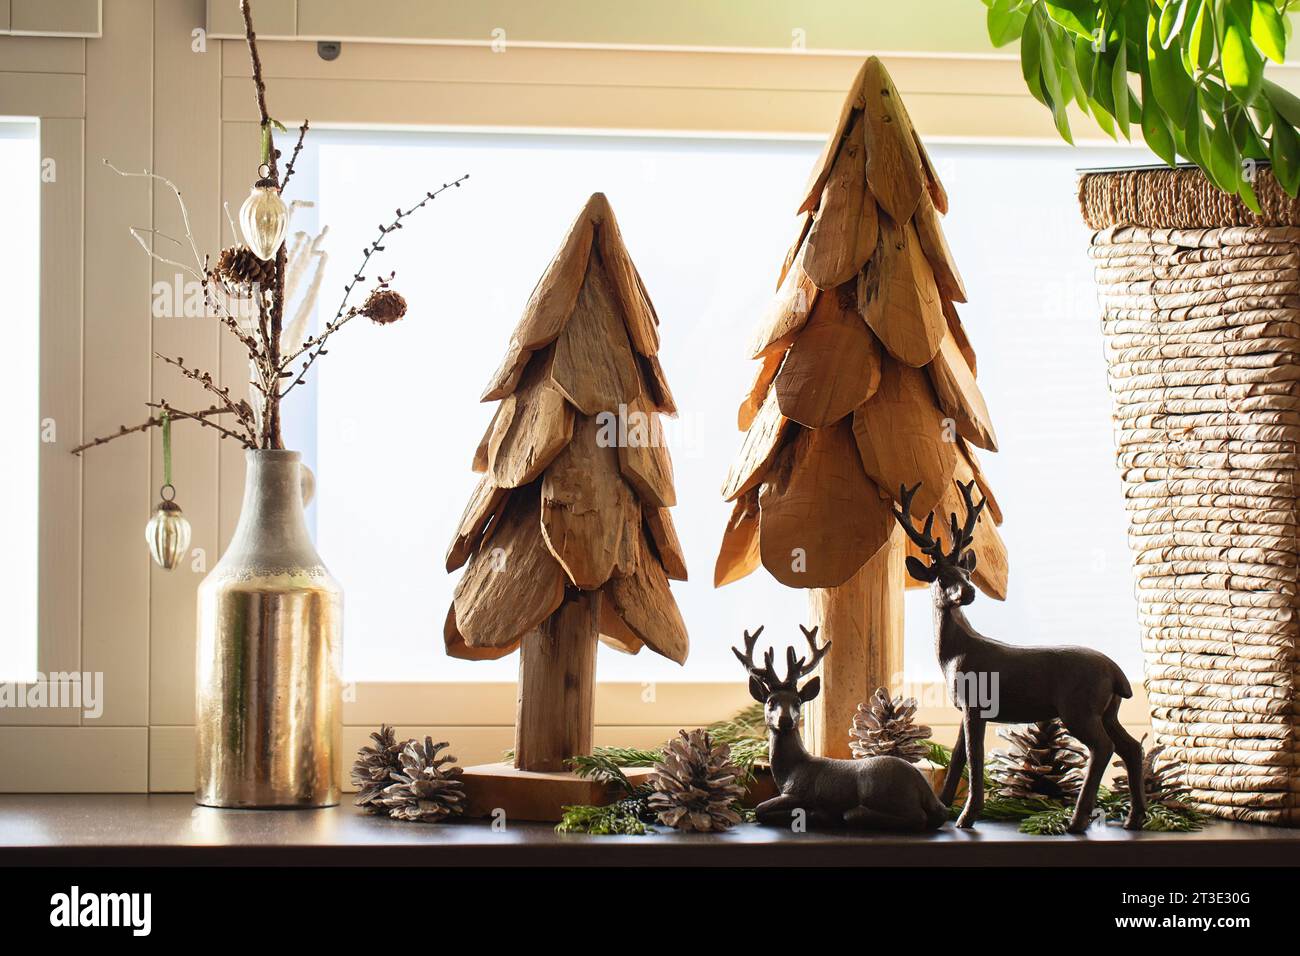 Weihnachtsdekoration. Künstliche Weihnachtsbäume aus Holz, Tannenzapfen und Hirschfiguren am Fenster im Inneren. Frohe Weihnachten Stockfoto